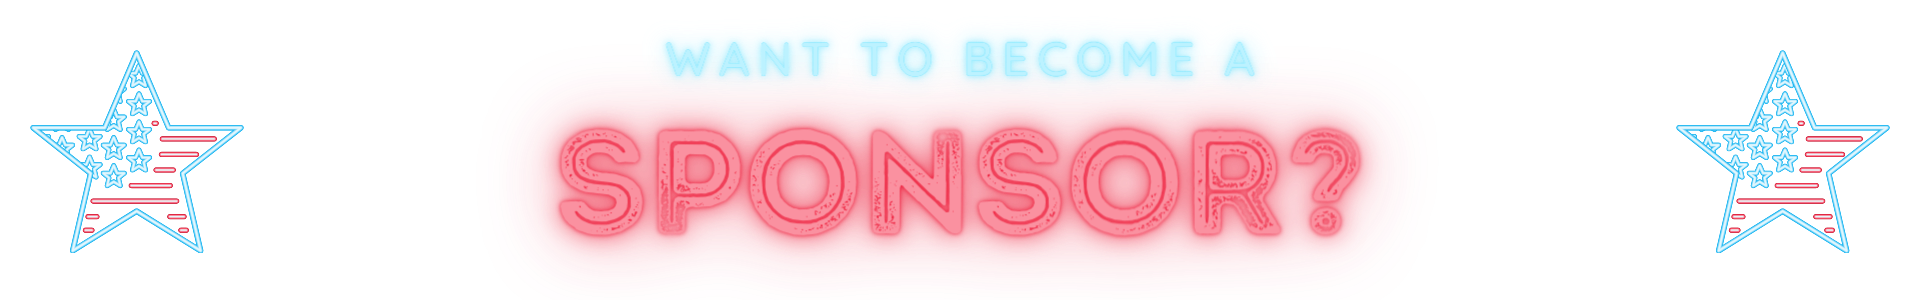 Become a Sponsor